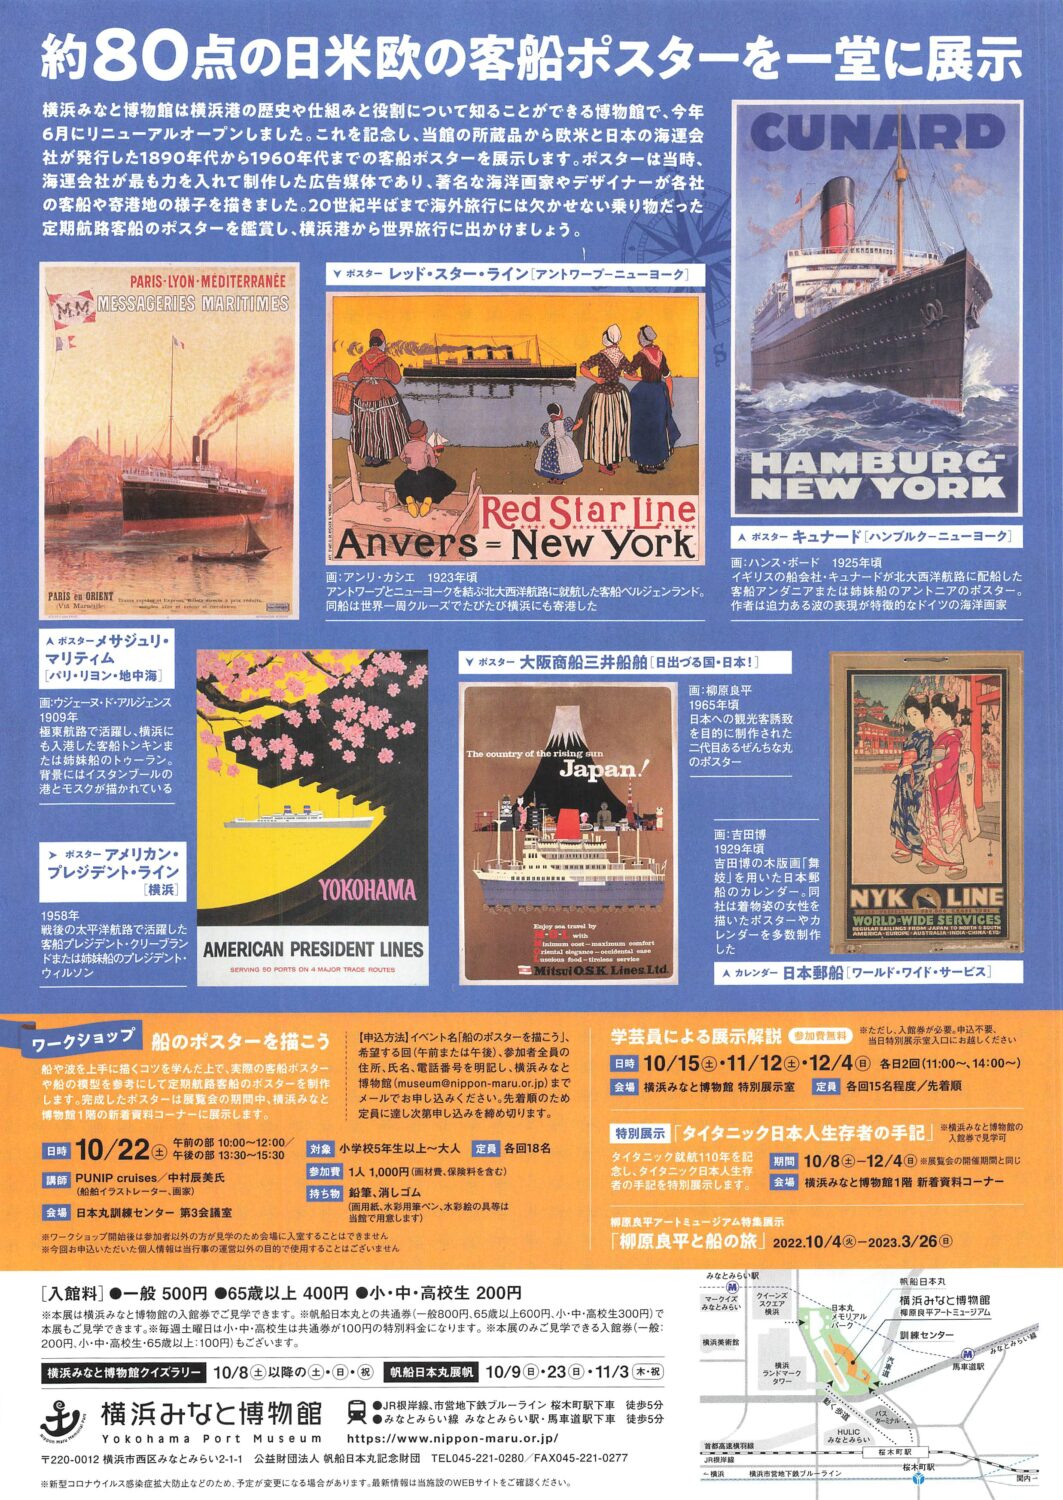 横浜みなと博物館「世界の客船ポスター展」開催中